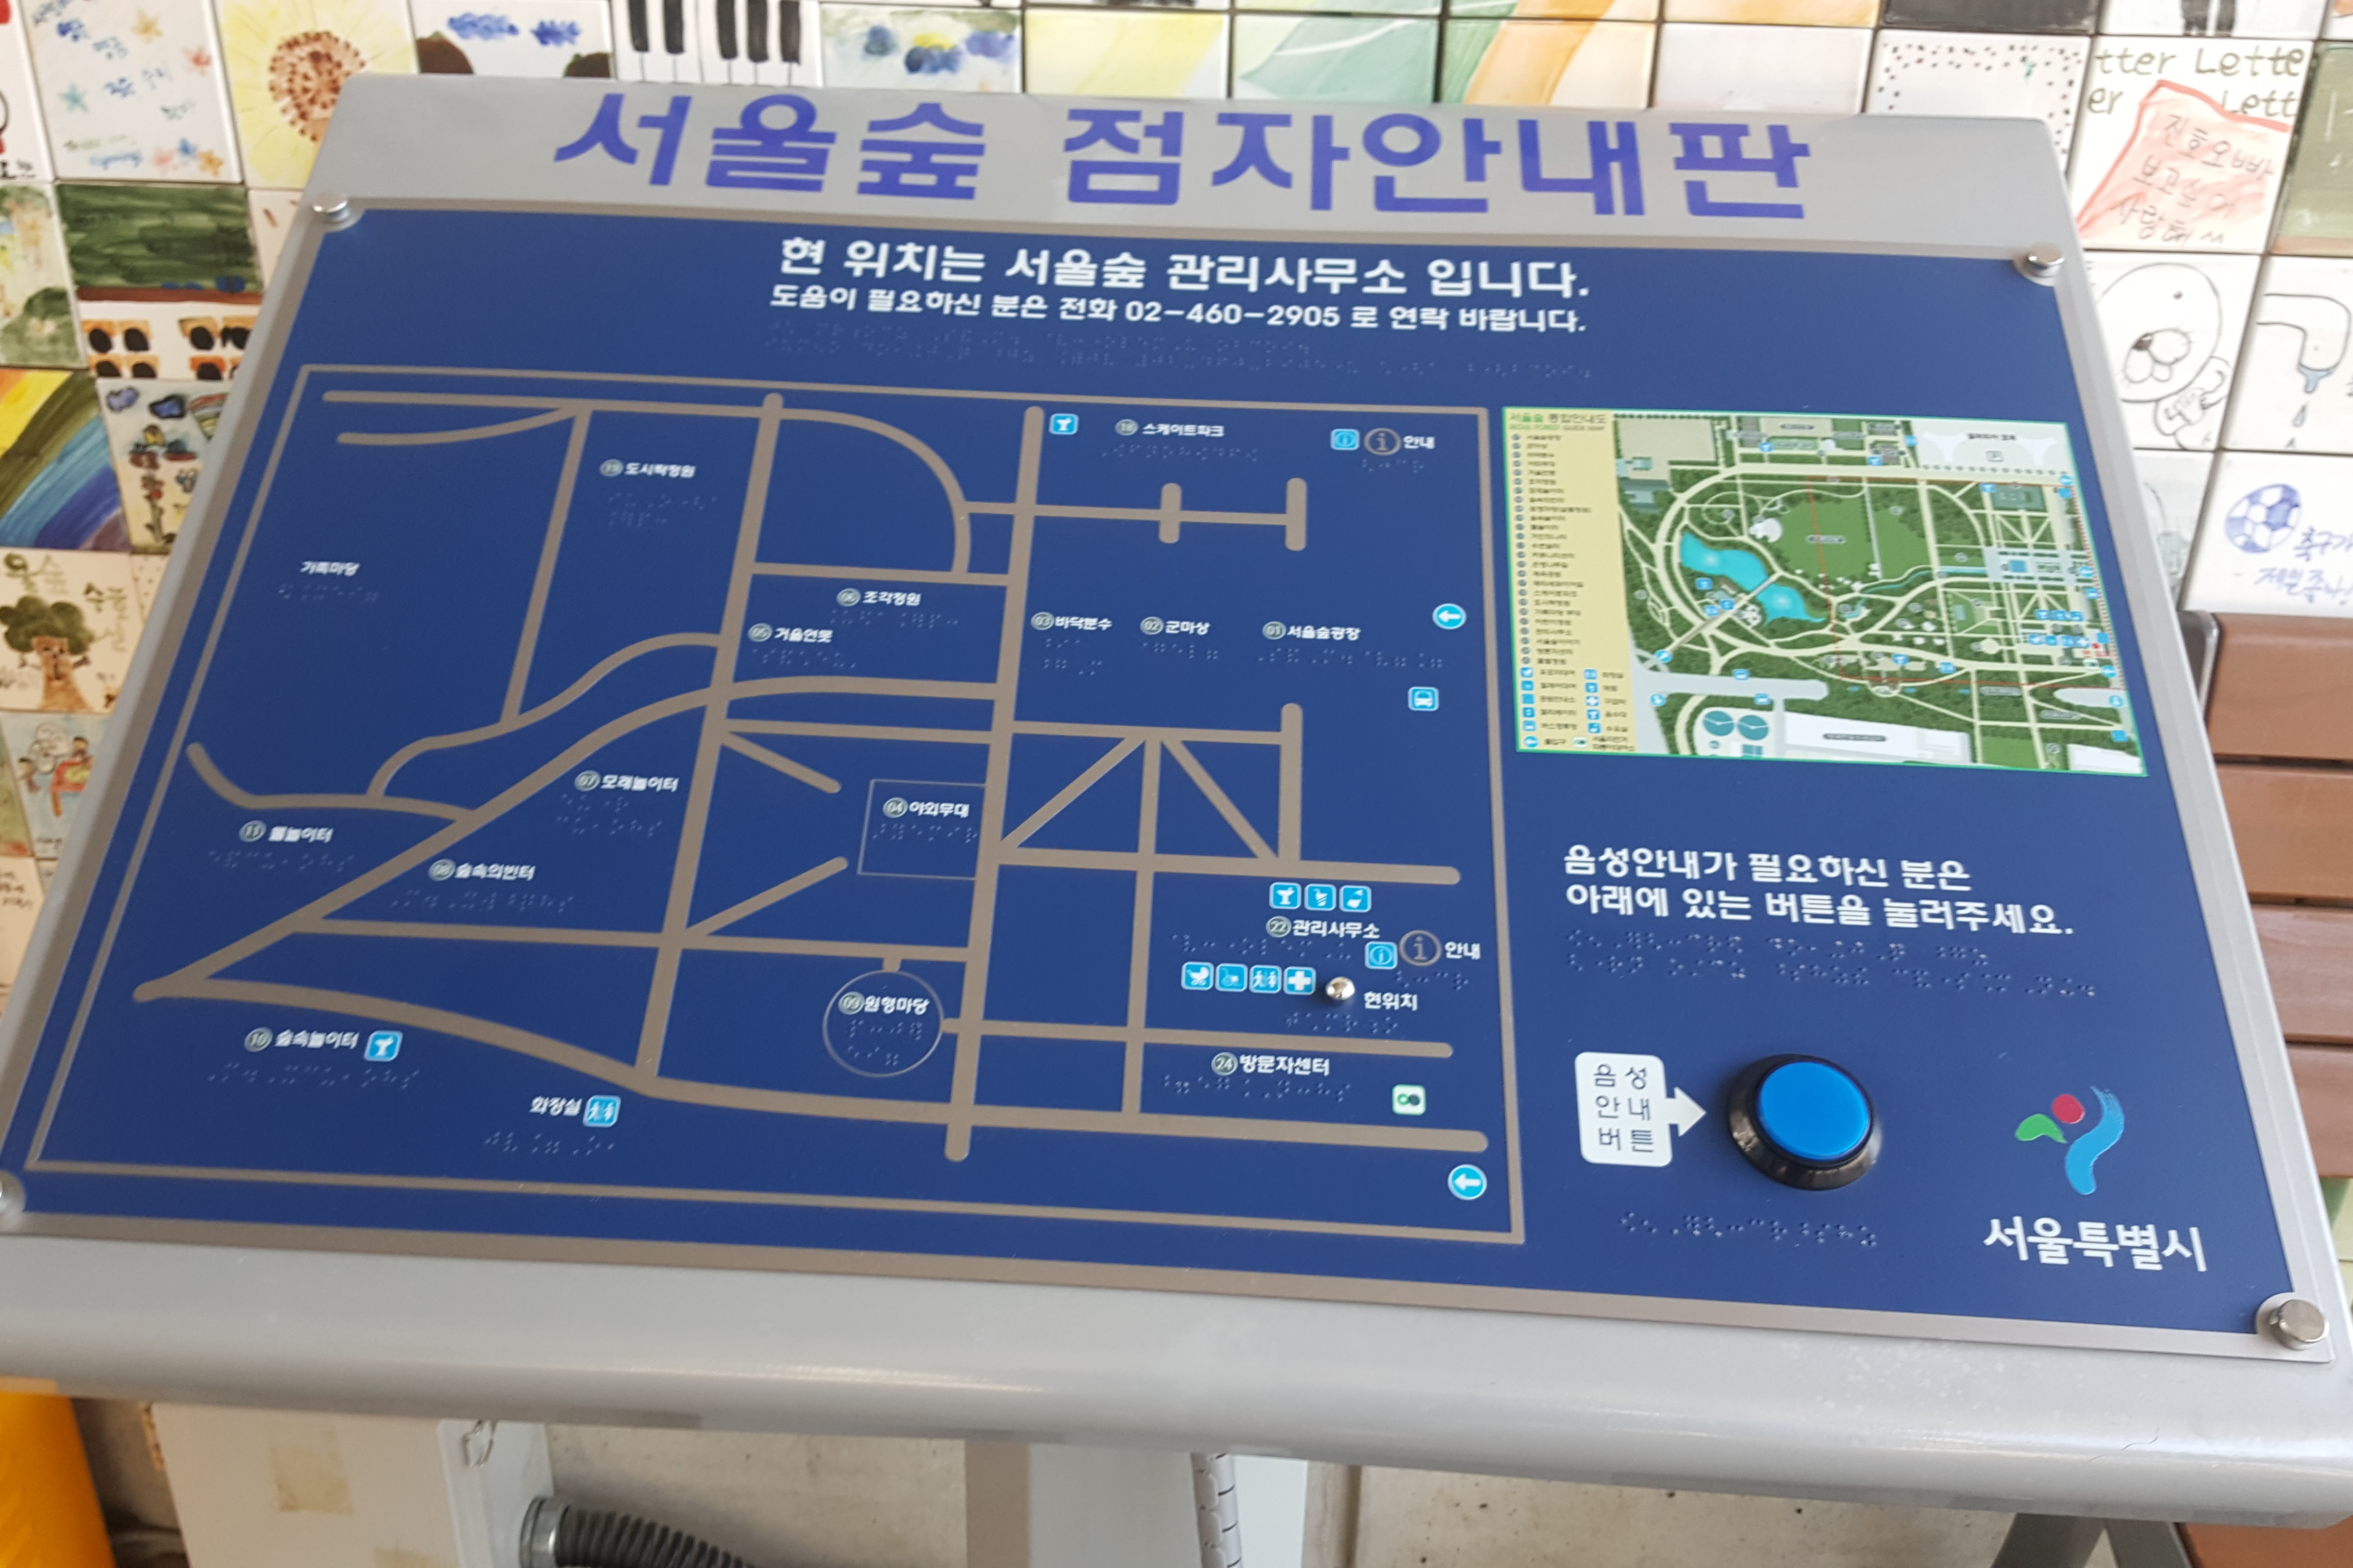 Information board/ Information desk0 : Seoul Forest map board in Korean braille